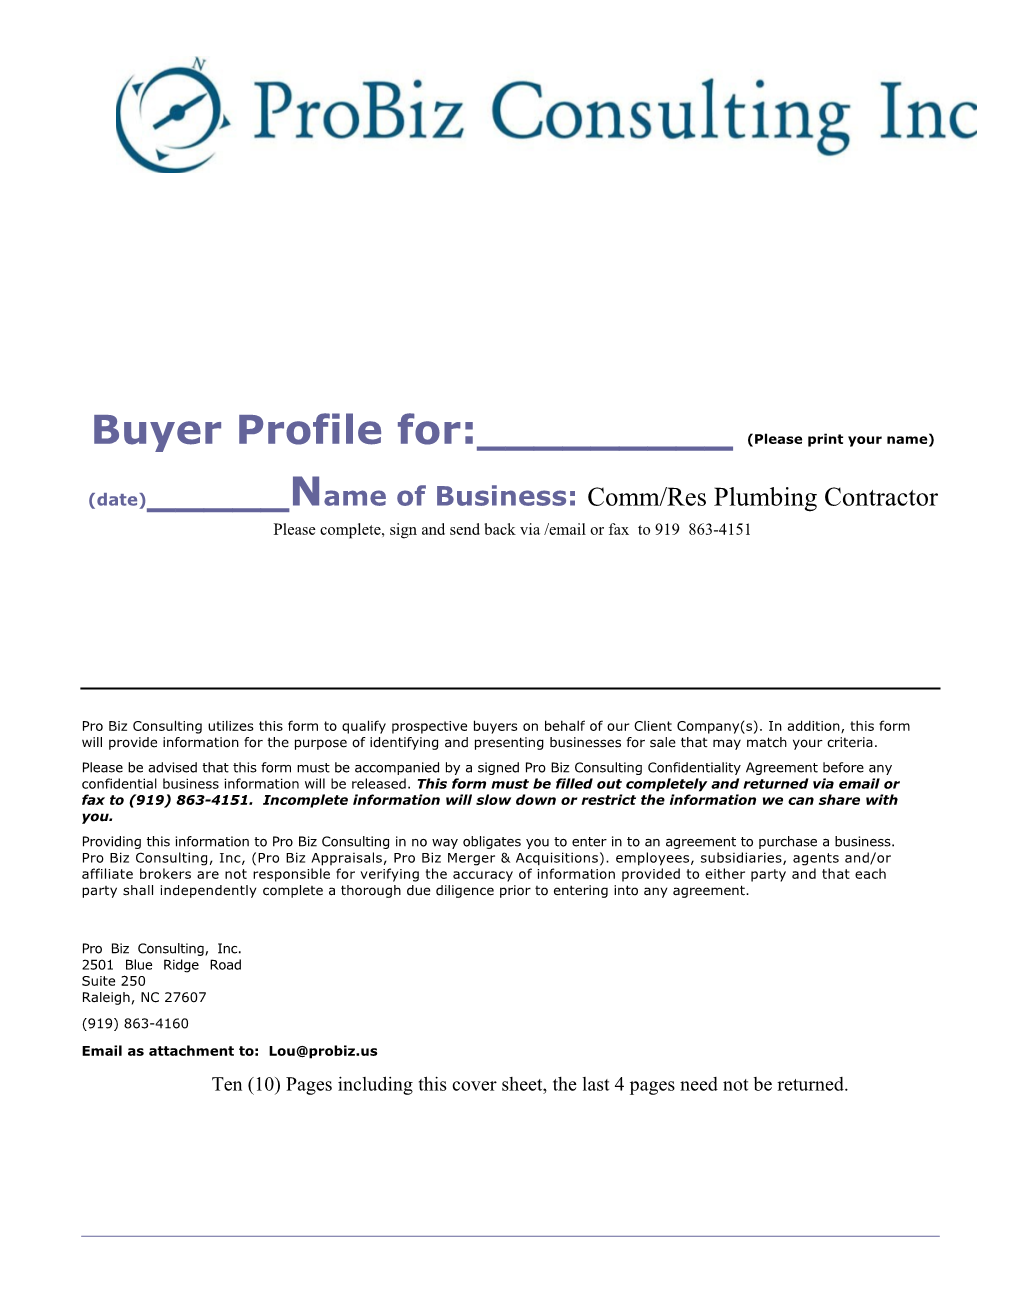 Probiz Consulting, Inc. 2501 Blue Ridge Road Suite 250